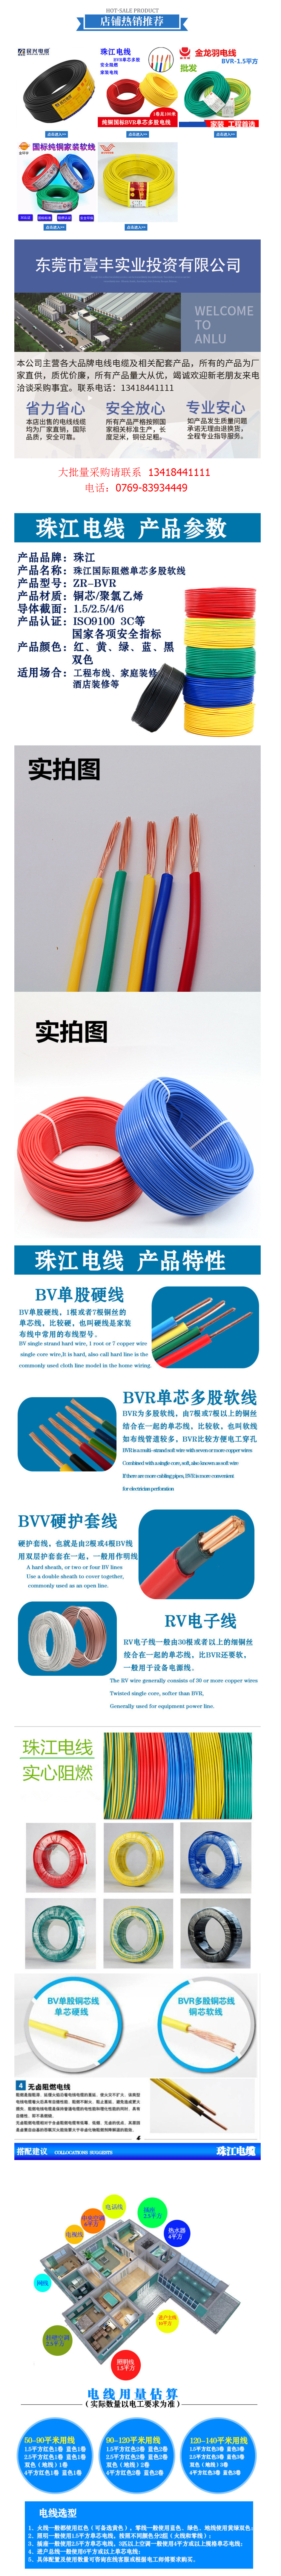 厂家批发家装家用国标电缆 BVR单芯多股纯铜电线 安全阻燃电源线-阿里巴巴.png